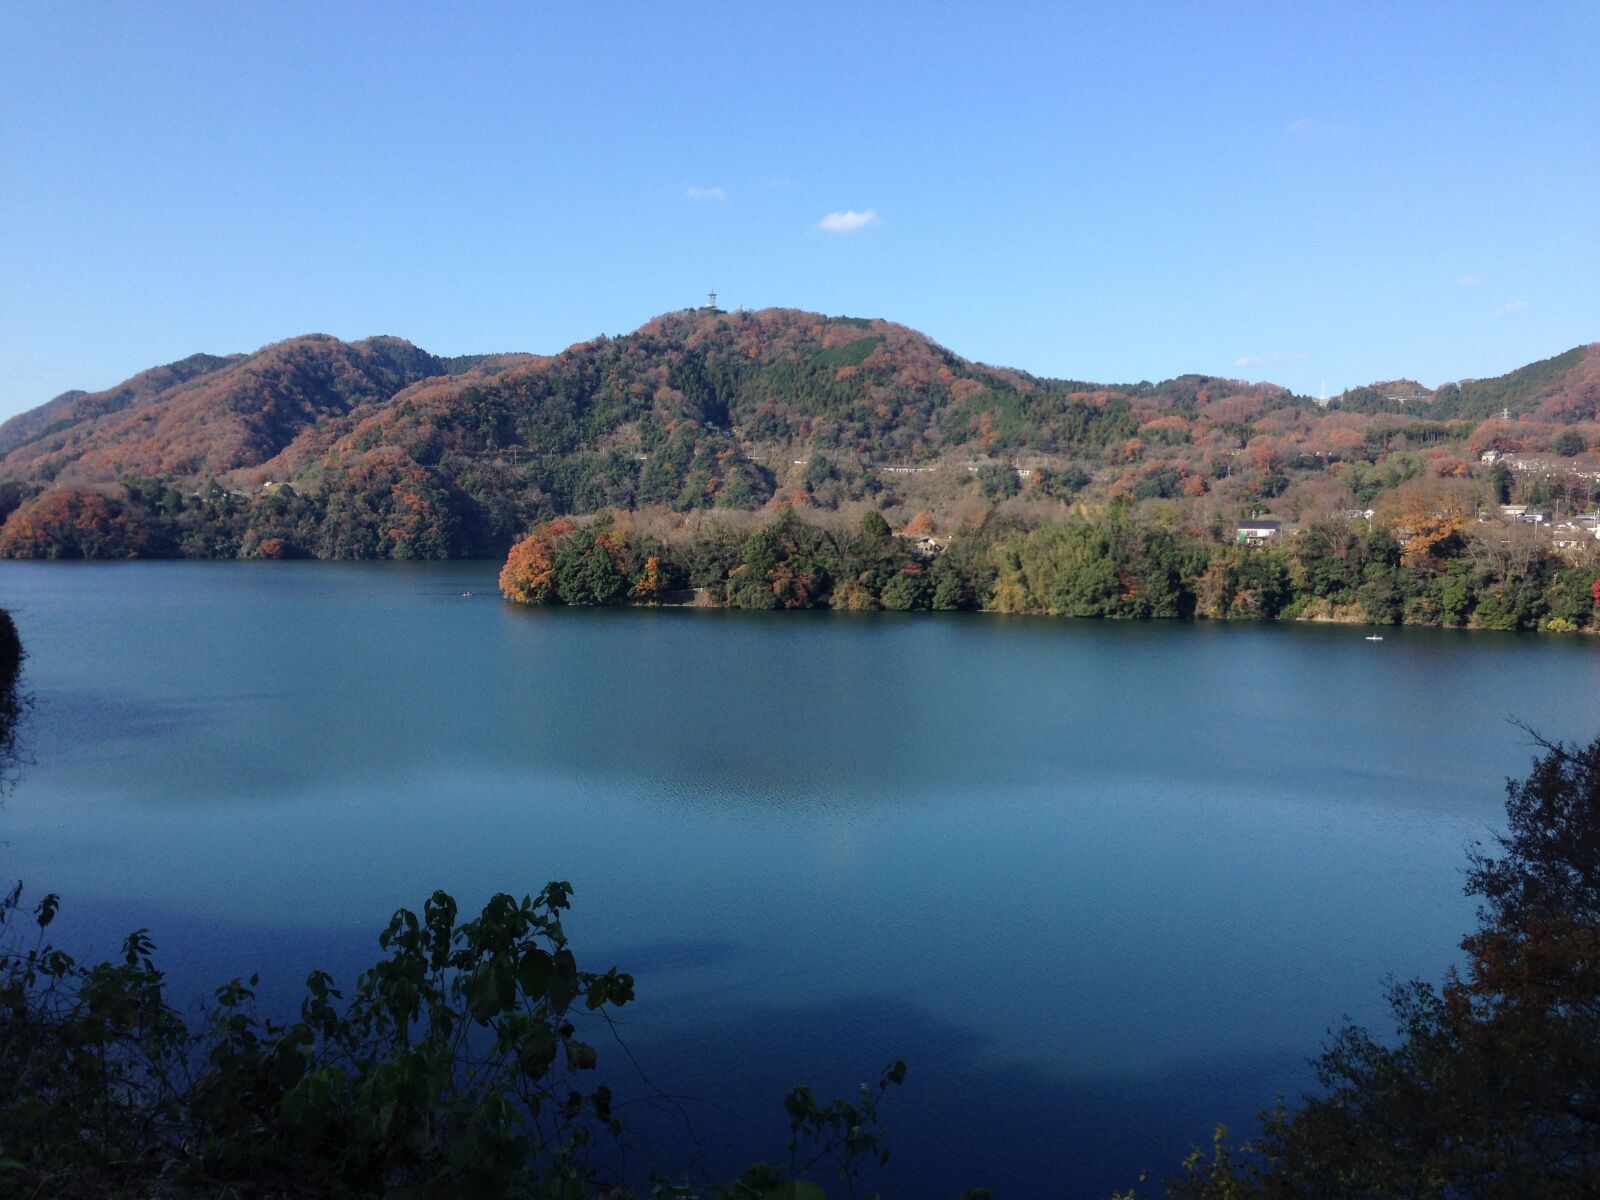 Apple iPhone 5 sample photo. Views, lake, natural photography